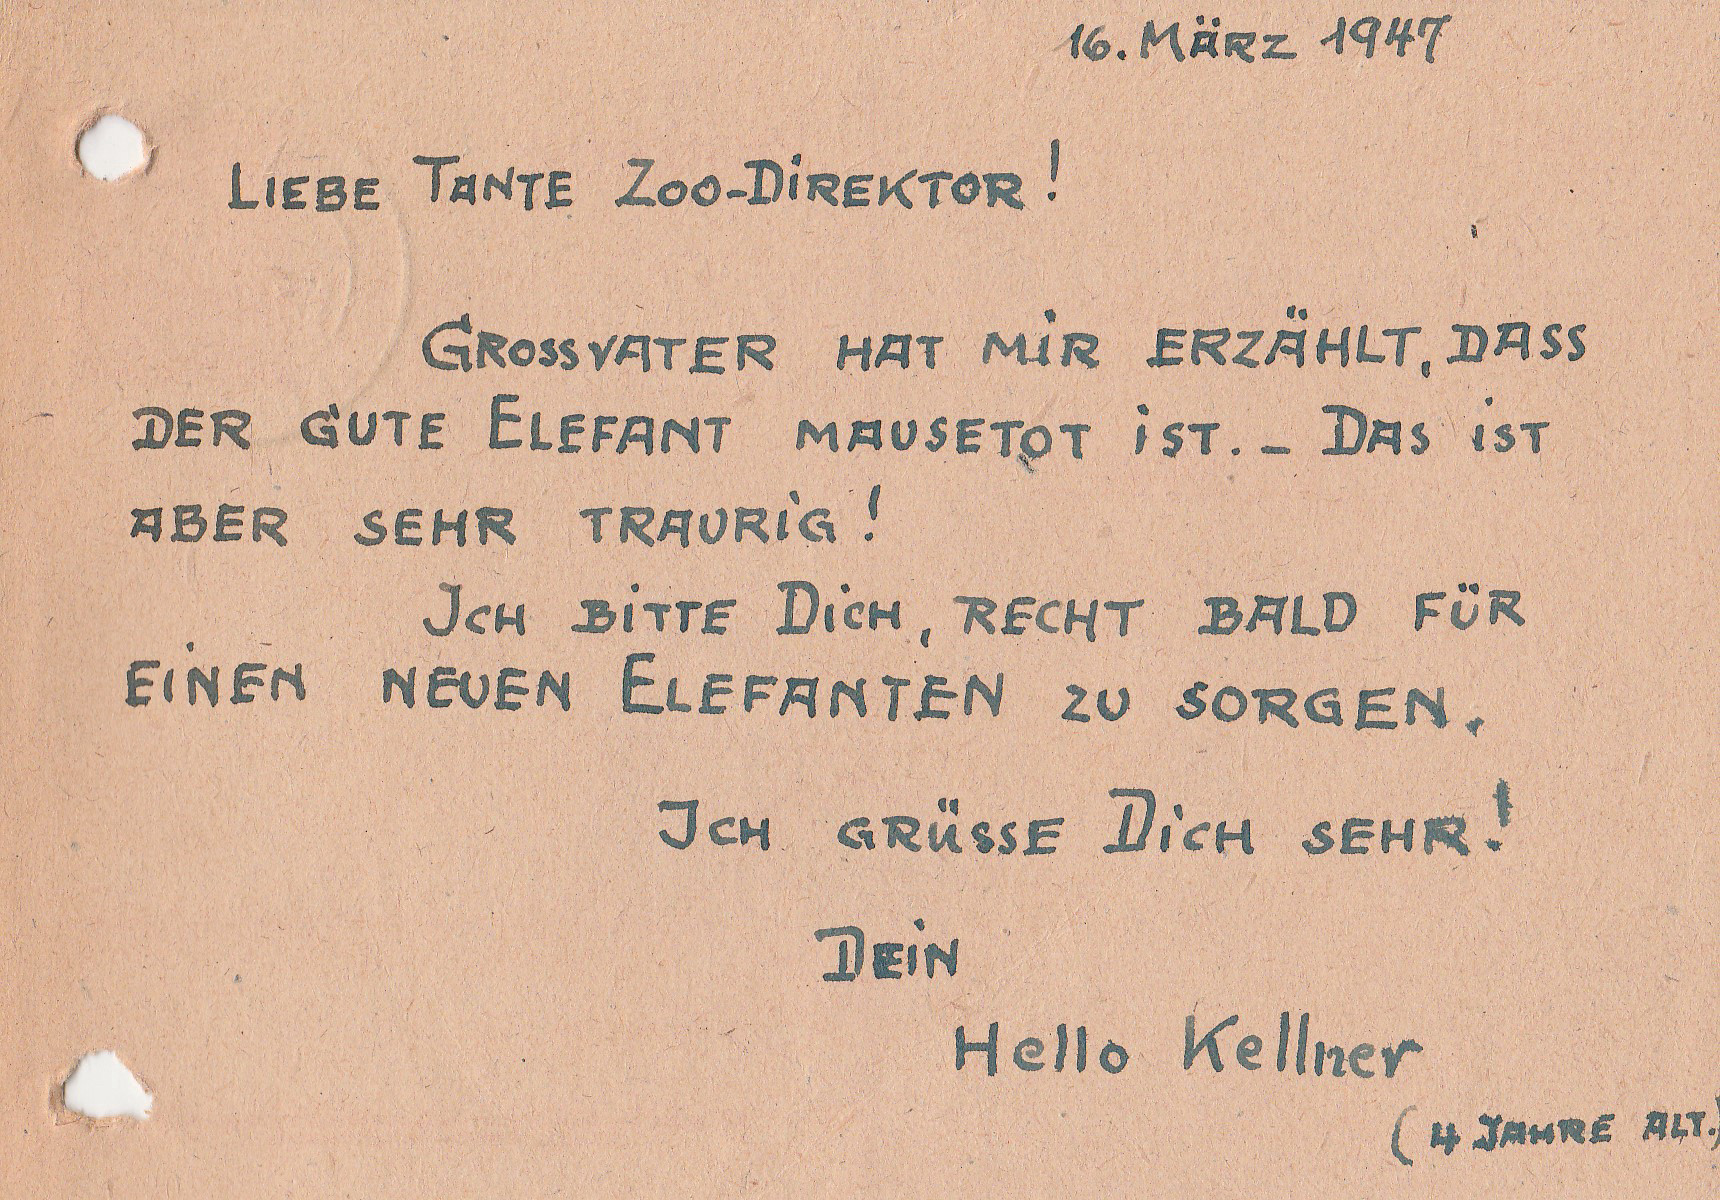 Perforated, handwritten postcard. German text: 16. März 1947. Liebe Tante Zoodirektor! Grossvater hat mir erzählt, dass der gute Elefant tot ist. Das ist aber sehr traurig! Ich bitte dich, recht bald für einen neuen Elefanten zu sorgen. Ich grüsse dich sehr! Dein Hello Kellner (4 Jahre alt).